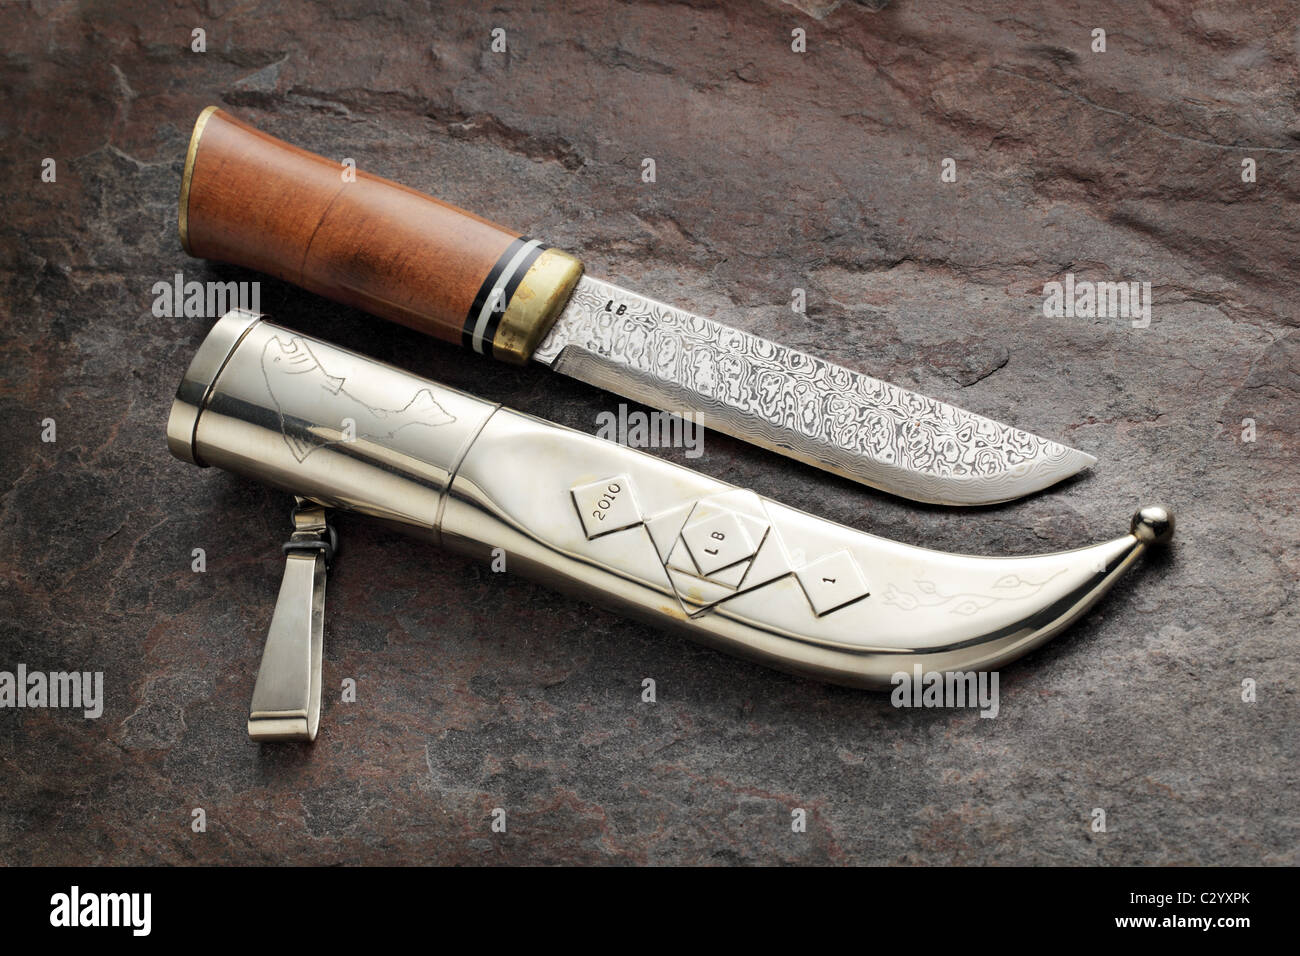 'Fait main' puukko finlandais du couteau. Un puukko est un style scandinave traditionnel finlandais ou couteau de ceinture. Banque D'Images